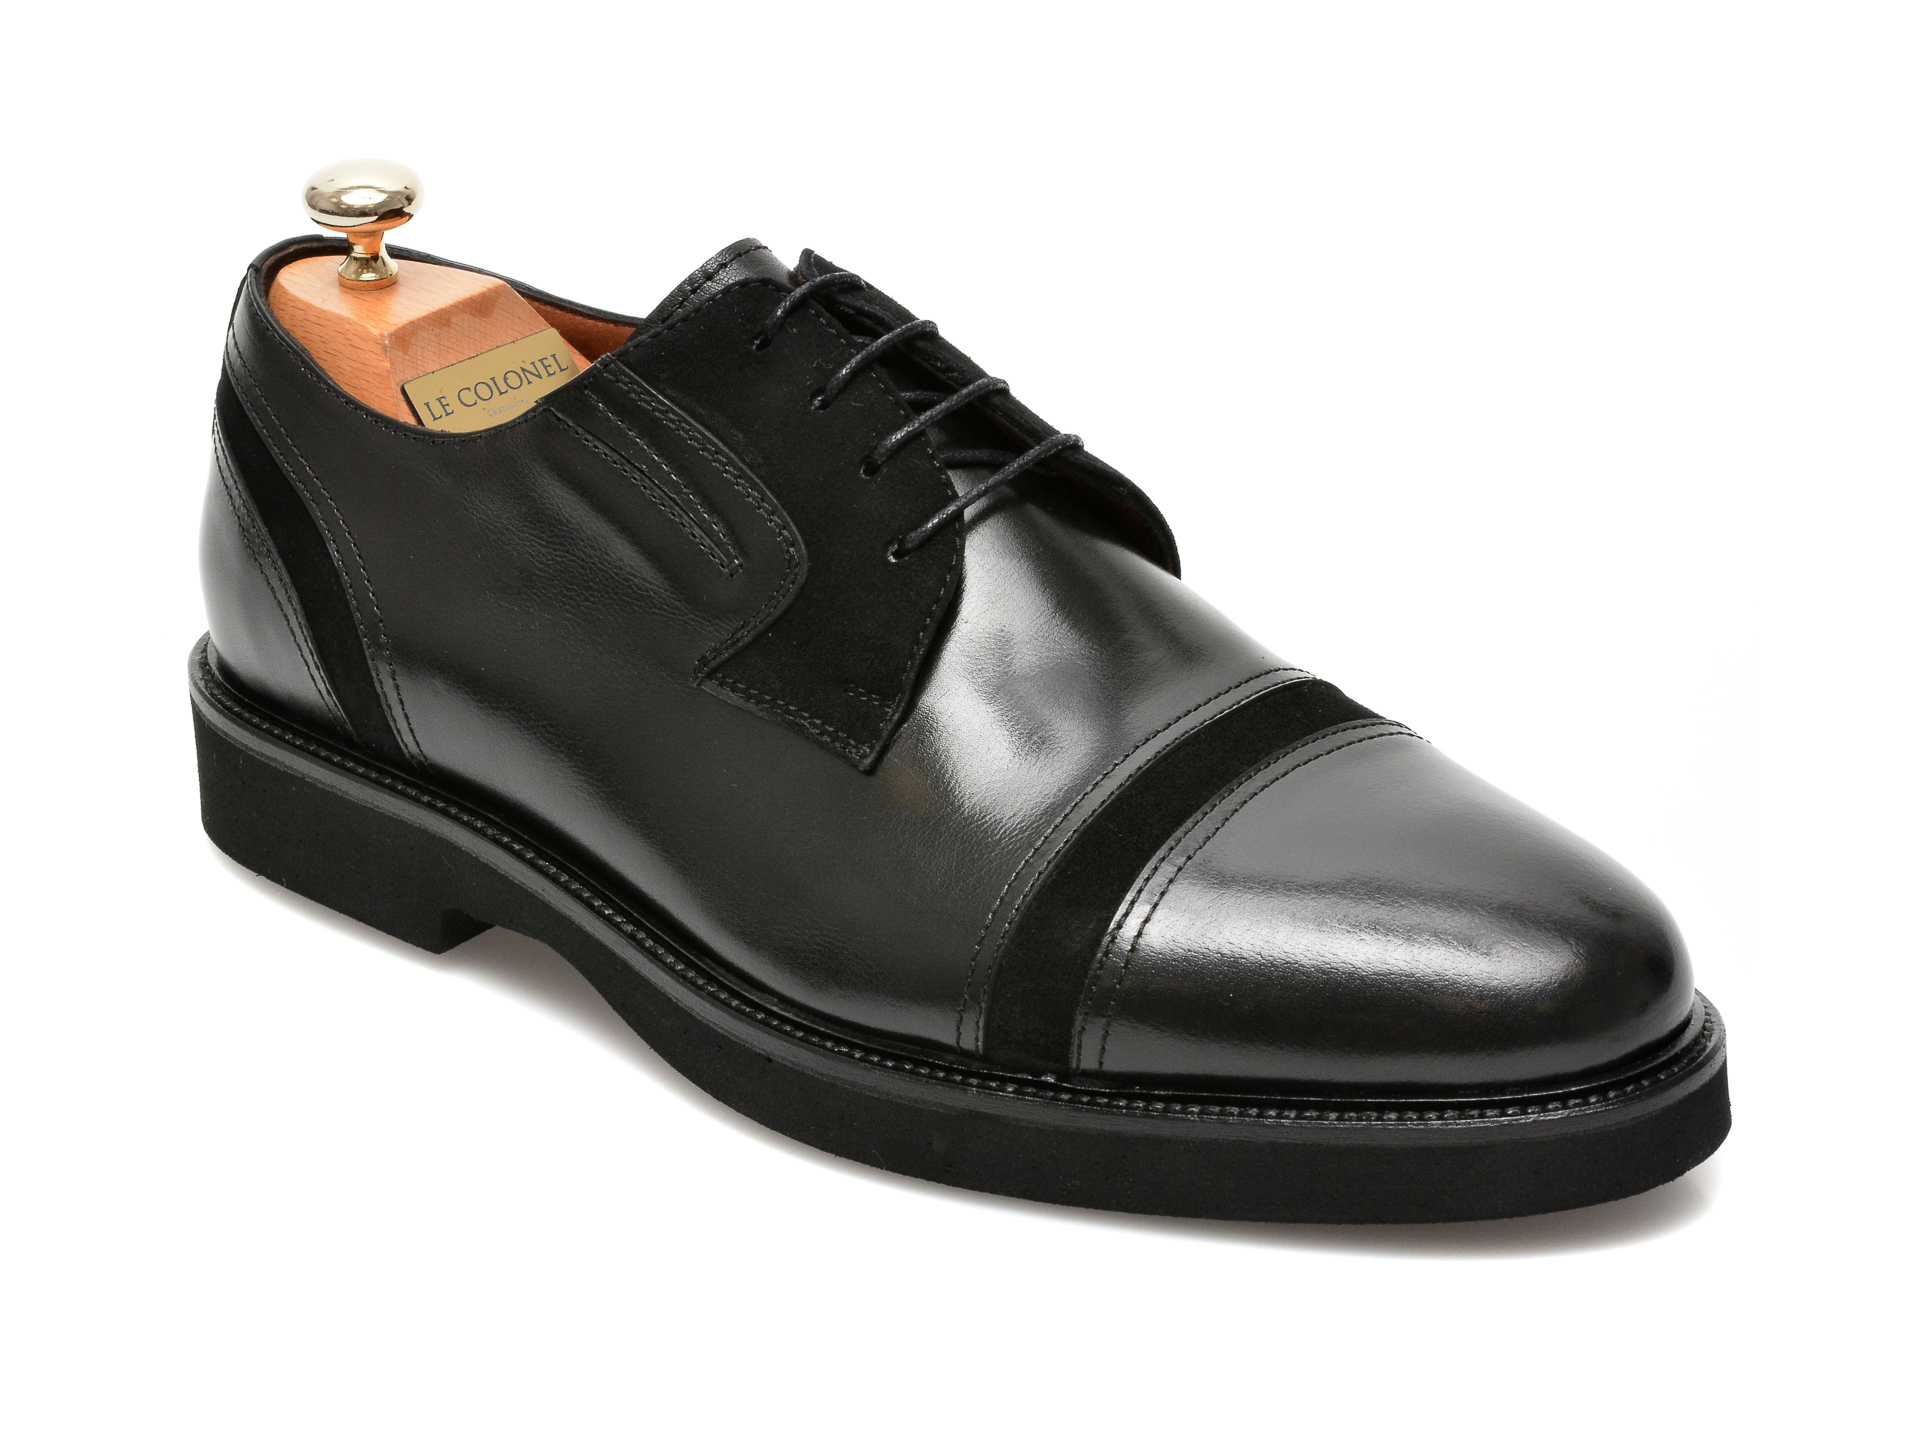 Pantofi LE COLONEL negri, 63811, din piele naturala Le Colonel